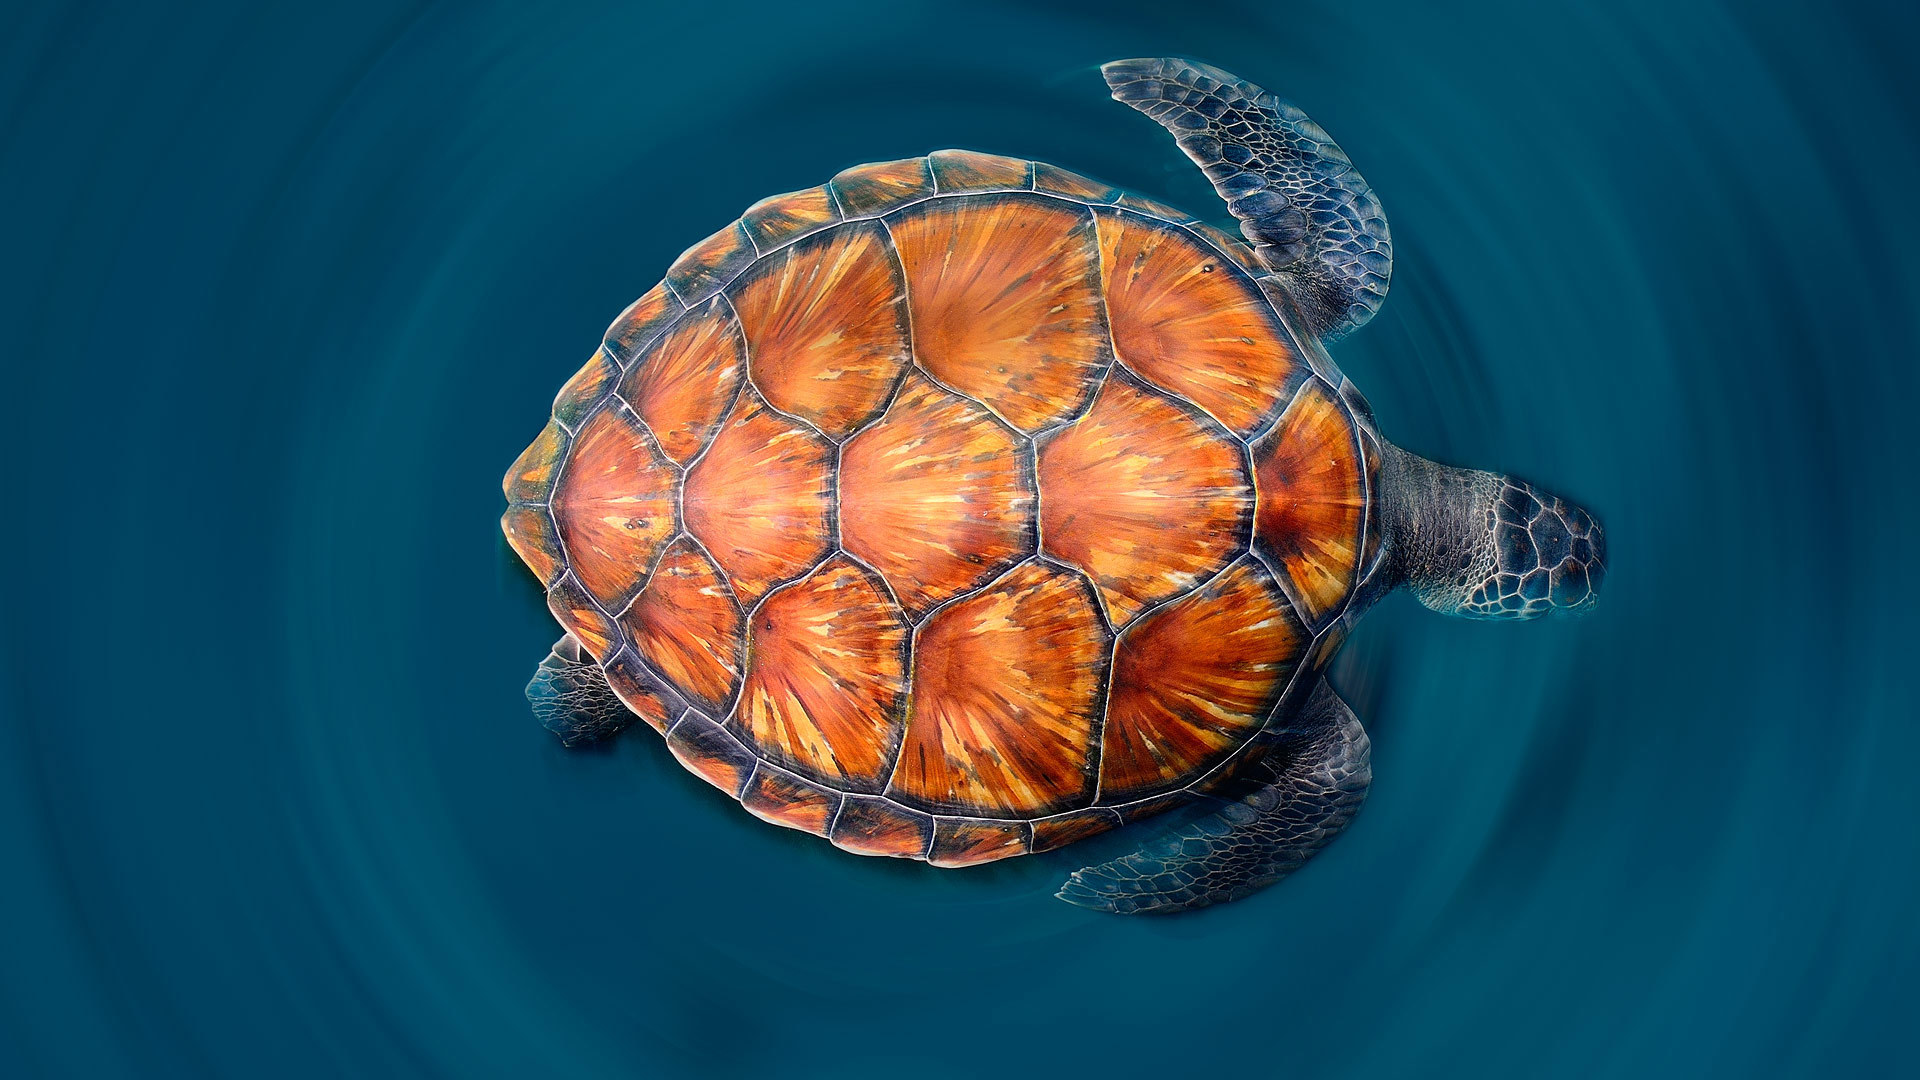 Turtle x. Панцирь морской черепахи. Карапакс у черепахи что это. Карапакса морской черепахи. Адокус черепаха.